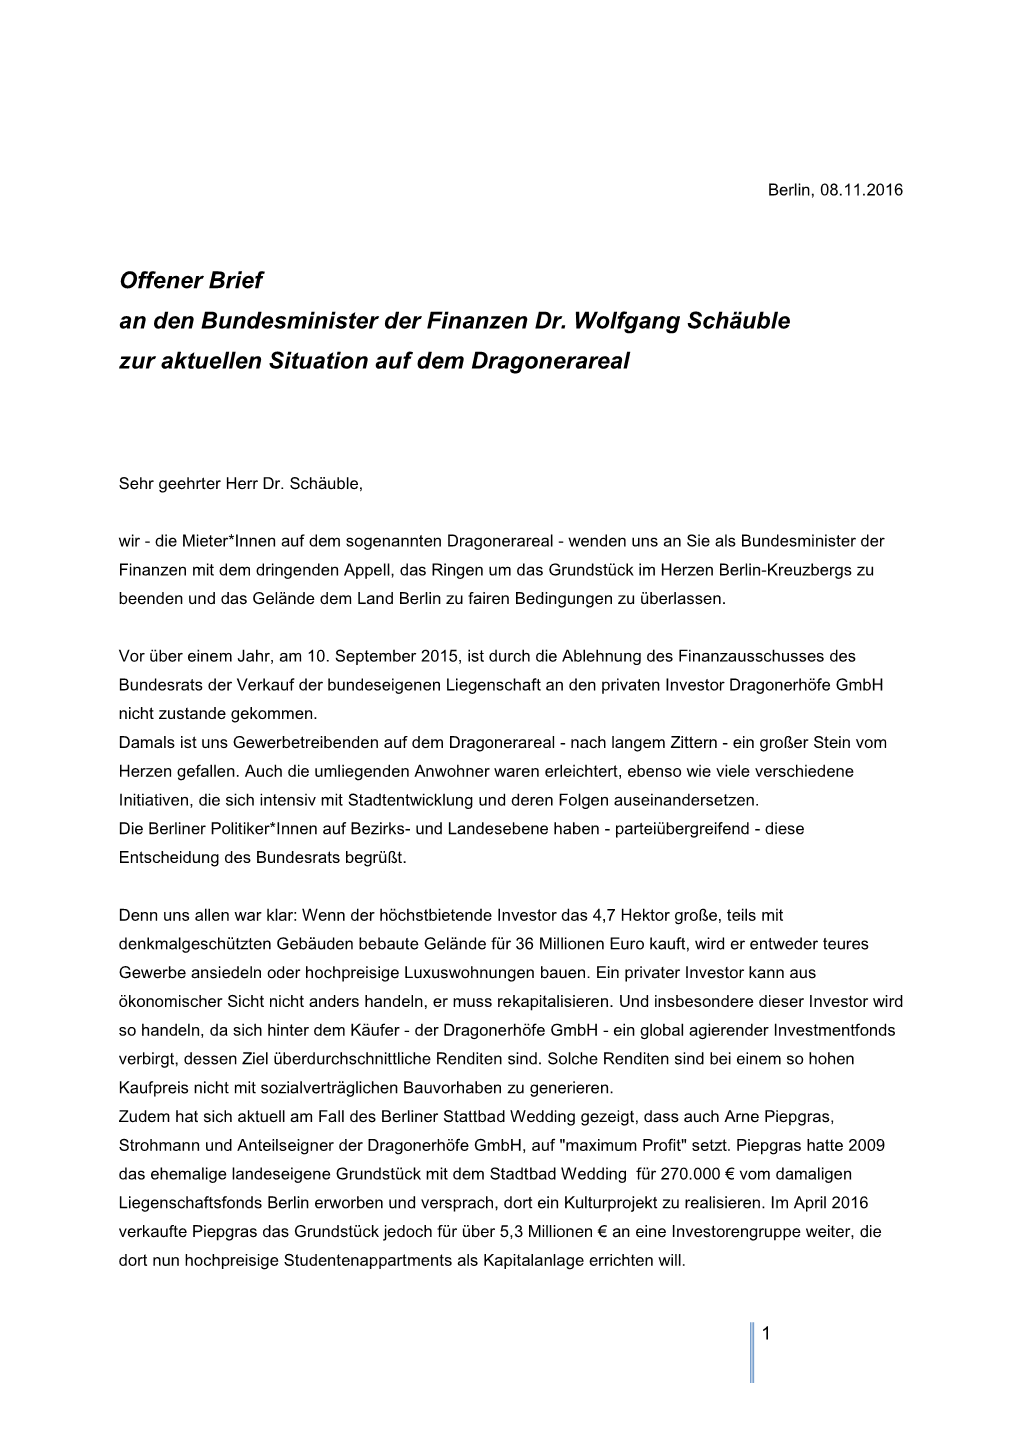 Offener Brief an Den Bundesminister Der Finanzen Dr. Wolfgang Schäuble Zur Aktuellen Situation Auf Dem Dragonerareal